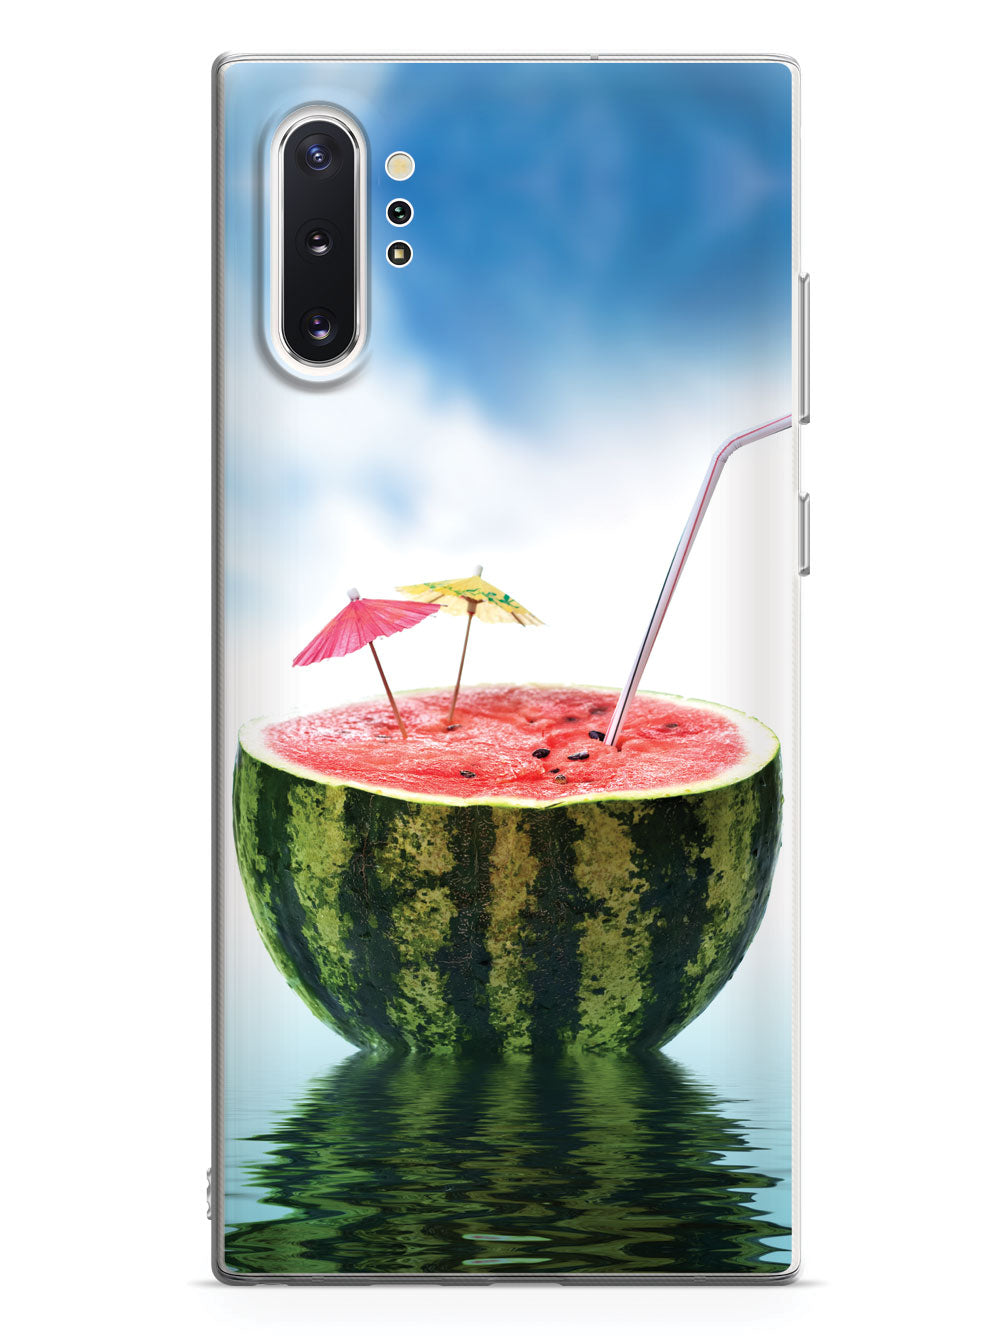 Watermelon Summer Drink - Vacation - White Case